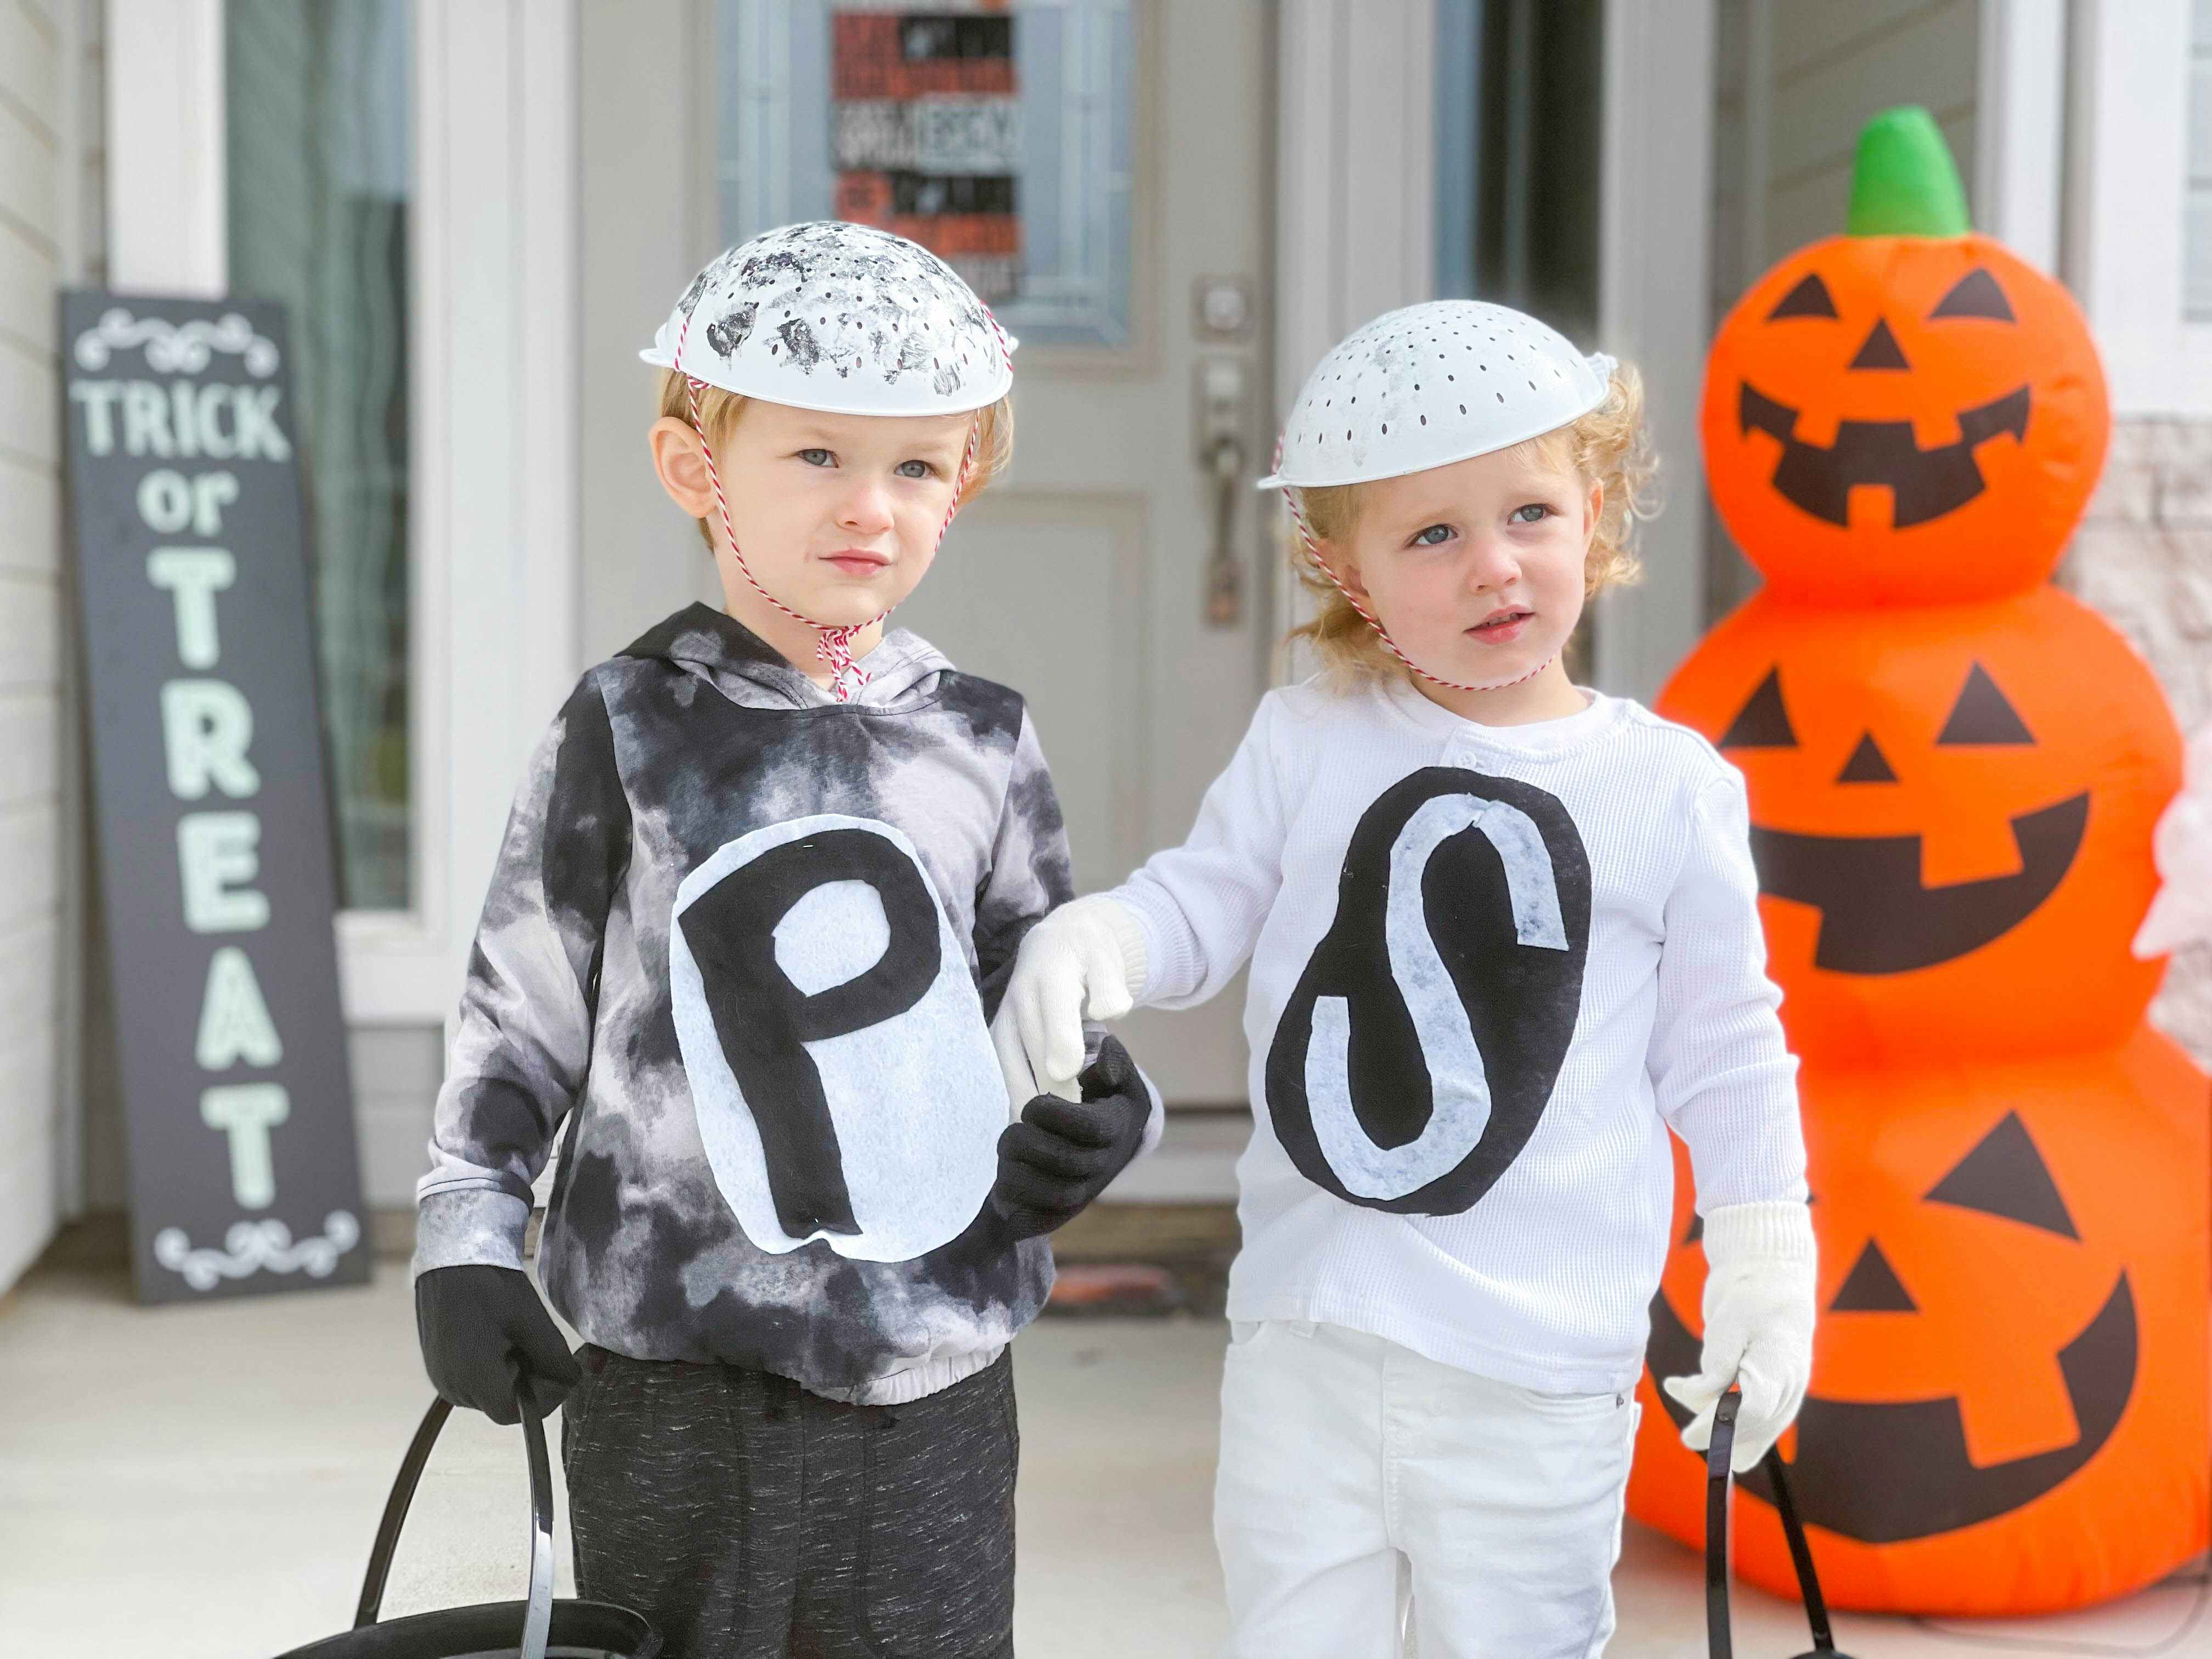 kids in salt and pepper costumes in front of door 